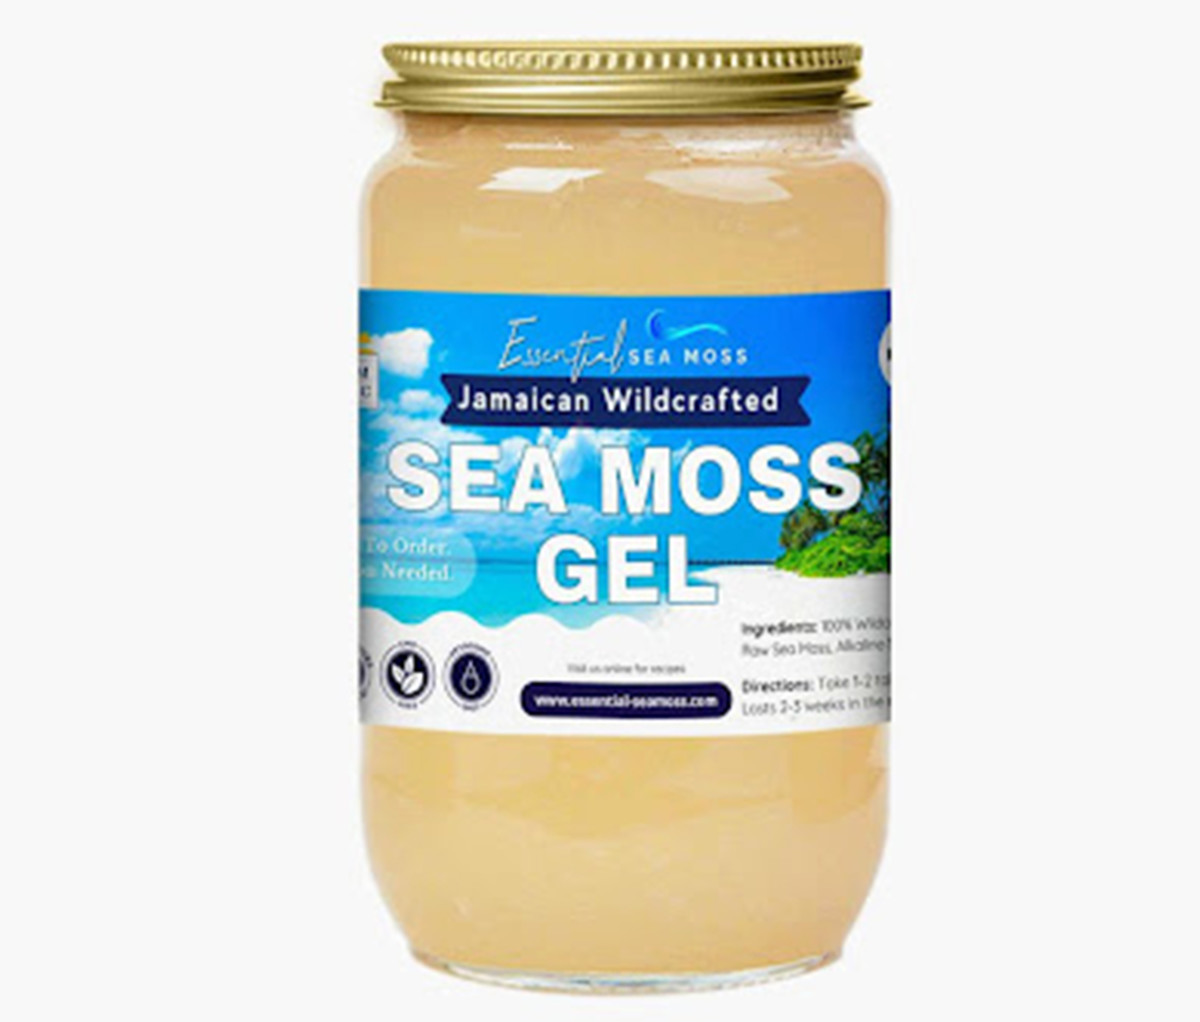 Essential Sea Moss